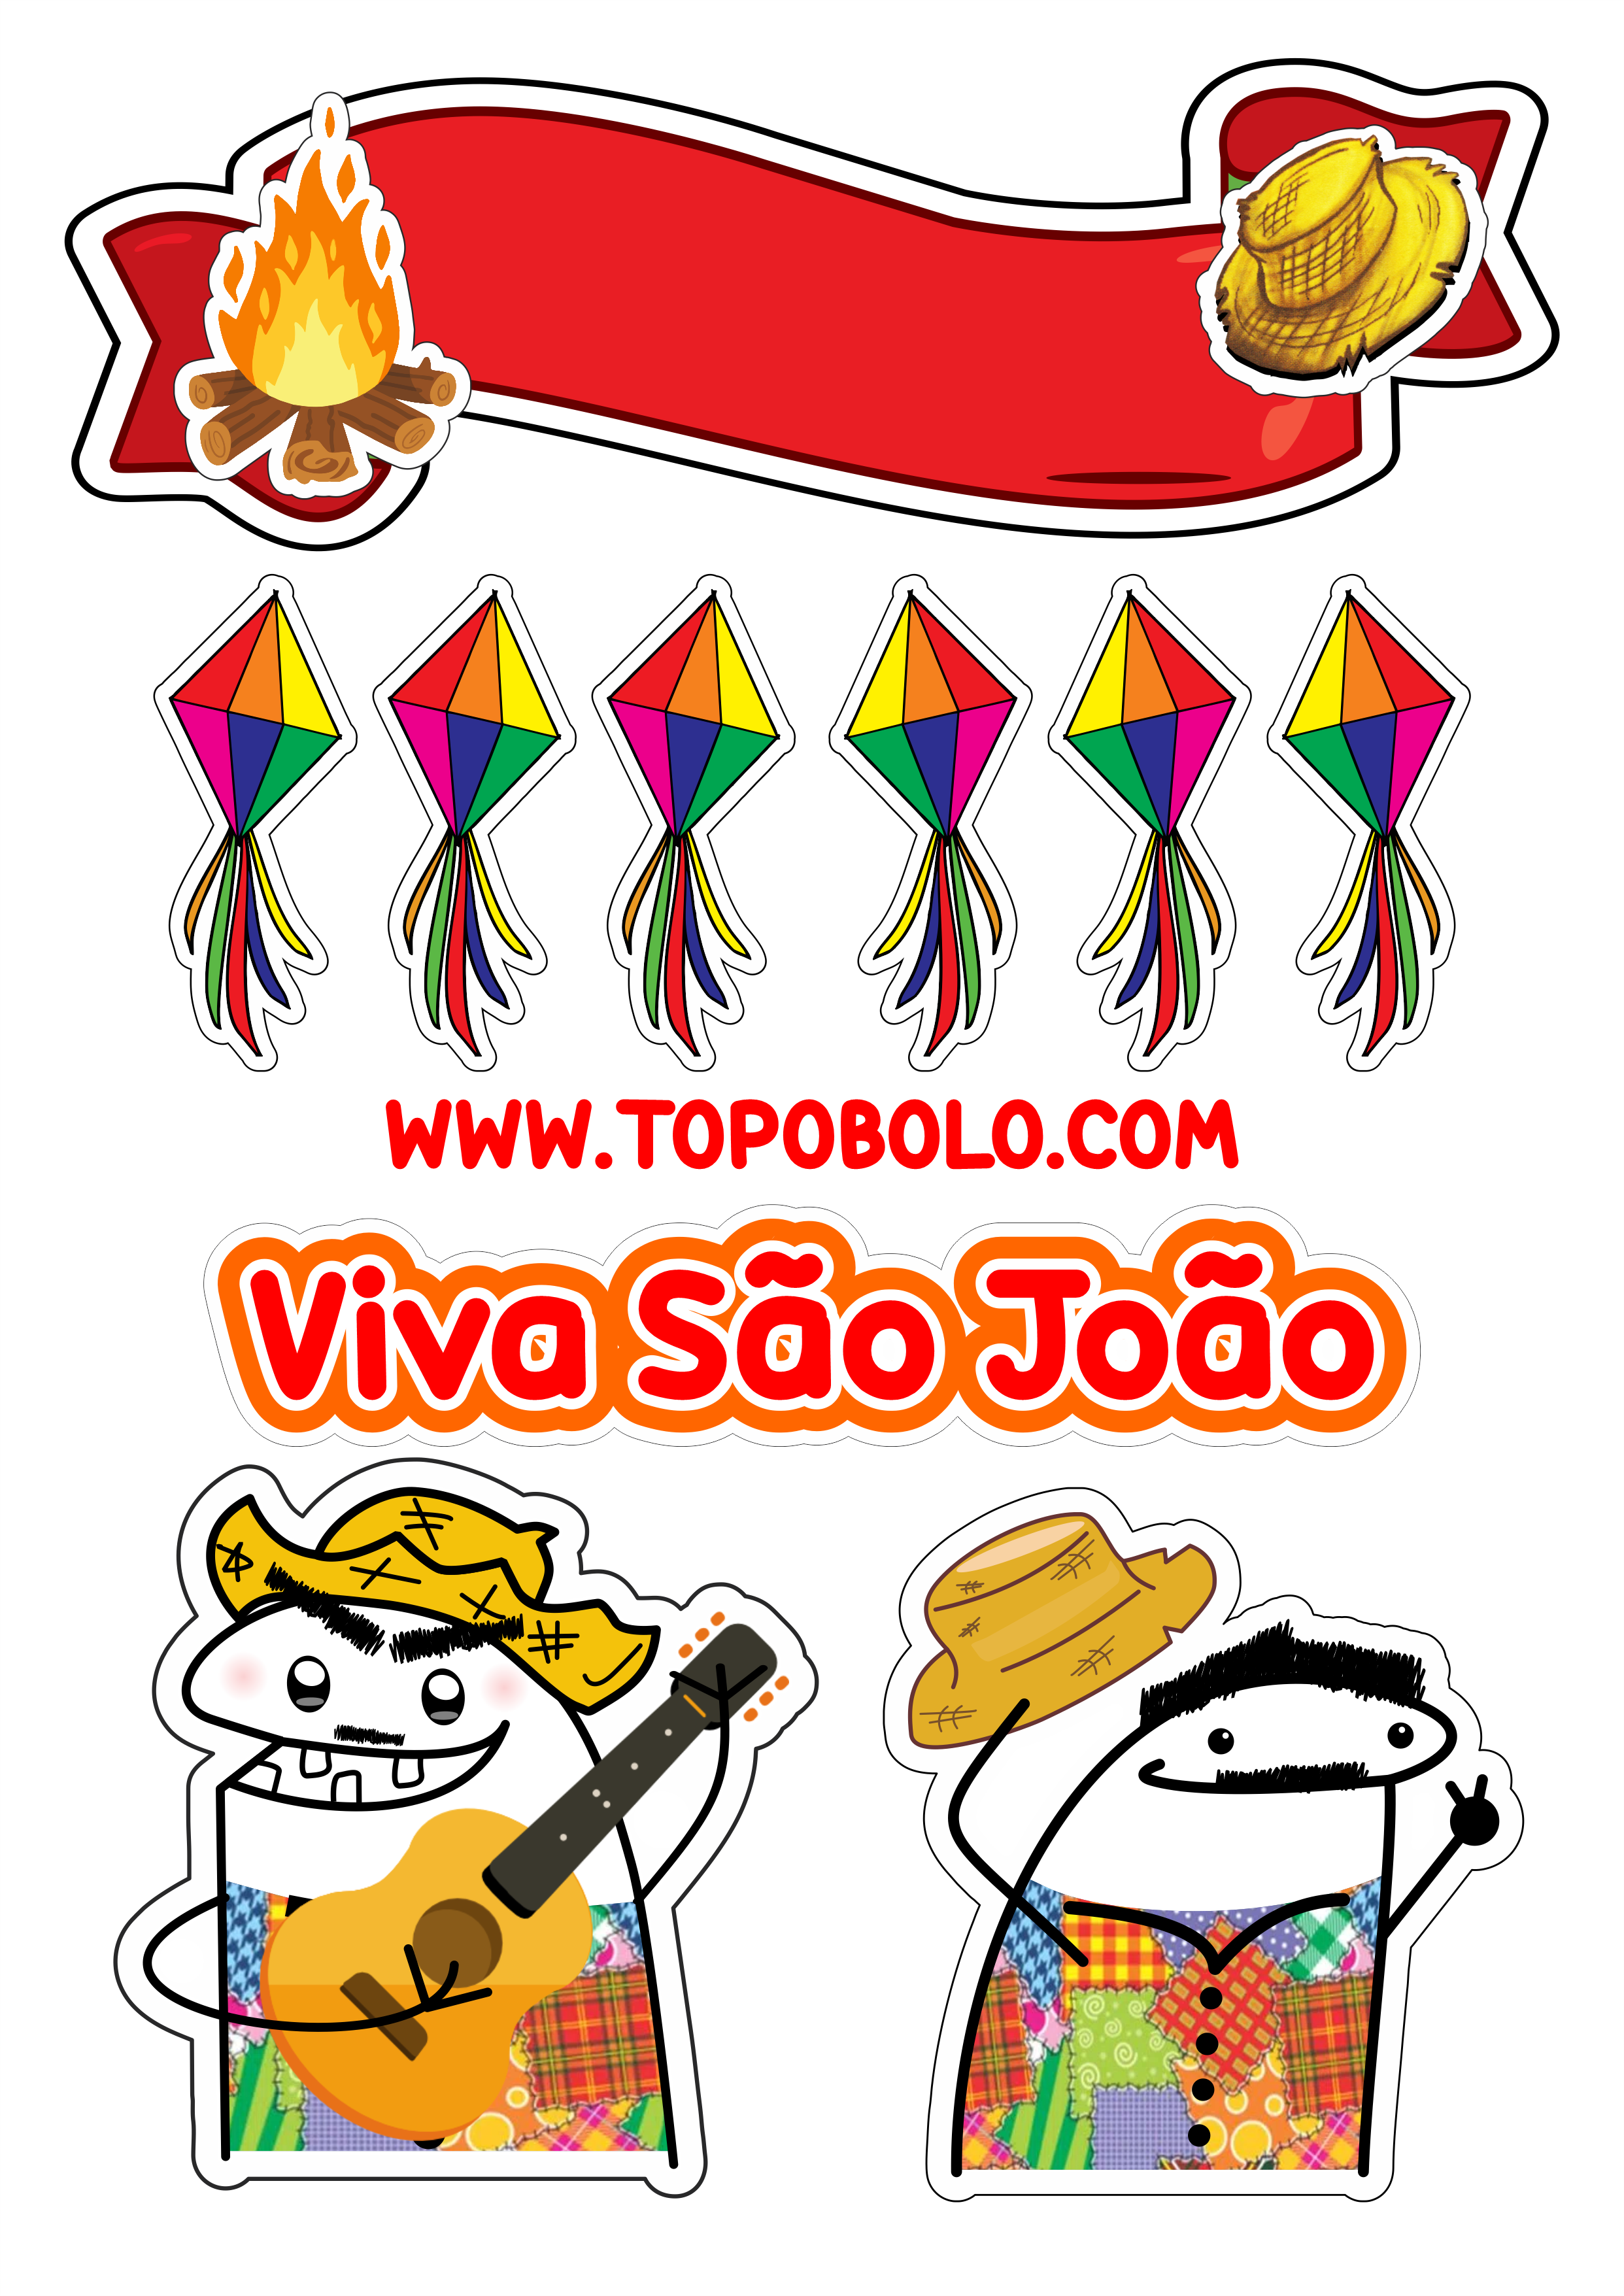 Topo de bolo para imprimir flork festa junina viva São João quadrilha caipira balões decoração de festa aniversário personalizado png